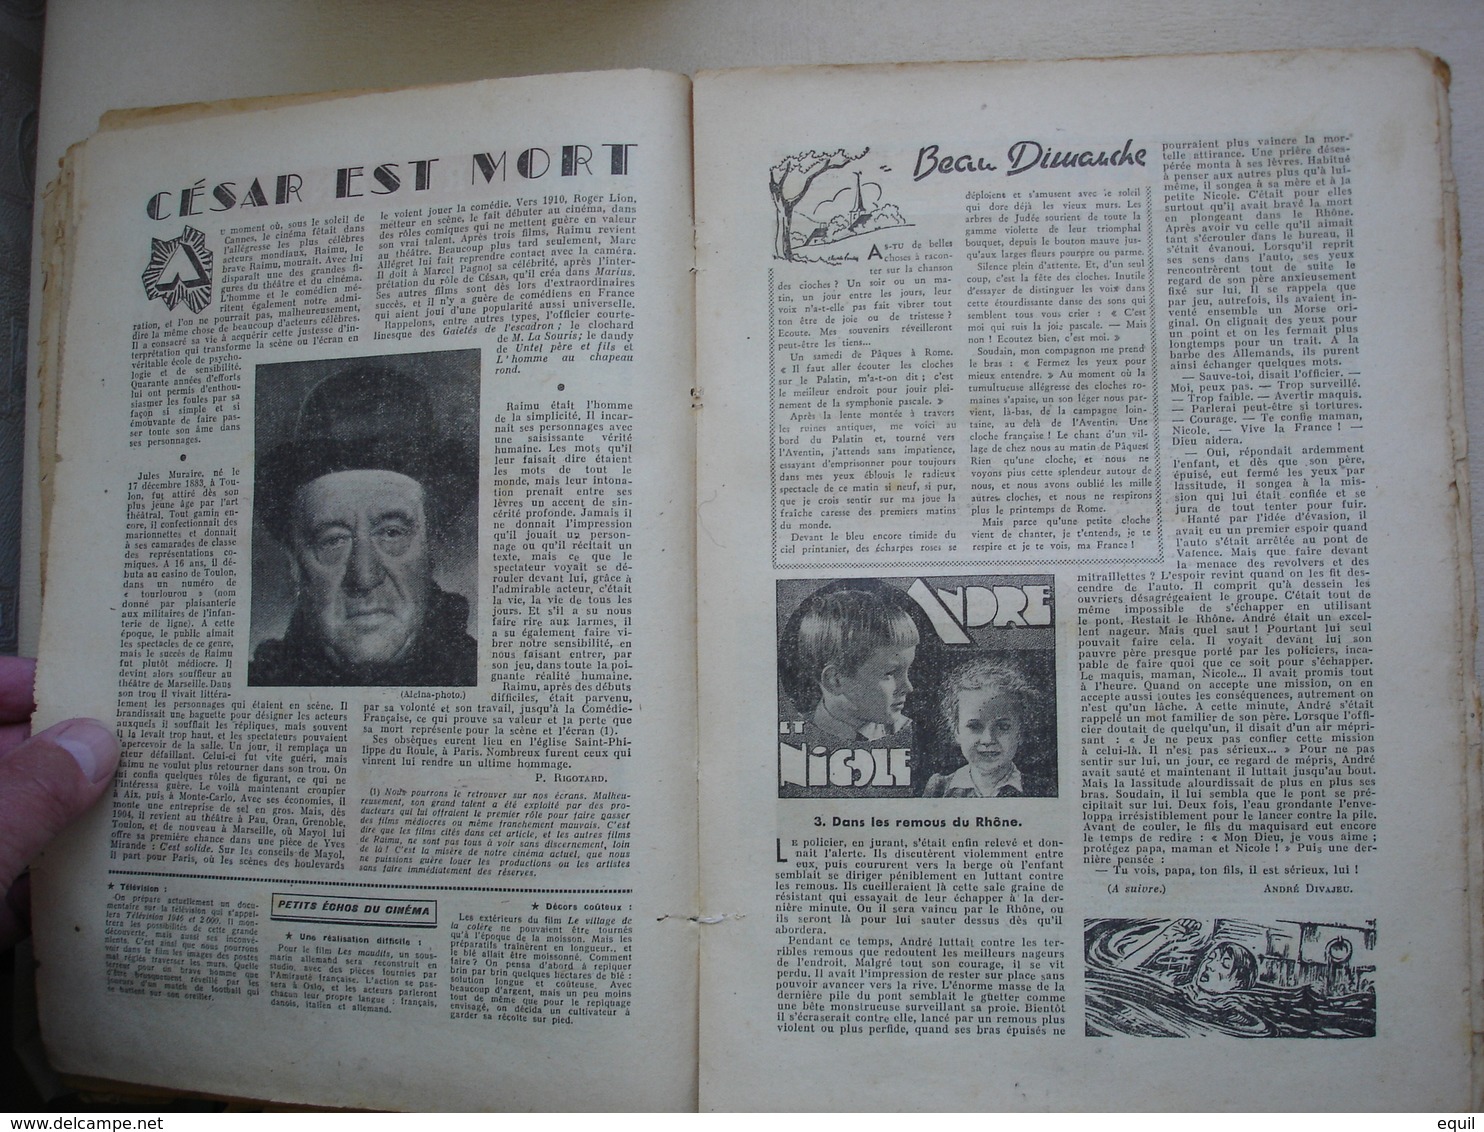 journal de BAYARD rare reliure de 33 journaux première édition après guerre du numéro 1 au numéro 33 - du 8 décembre1946